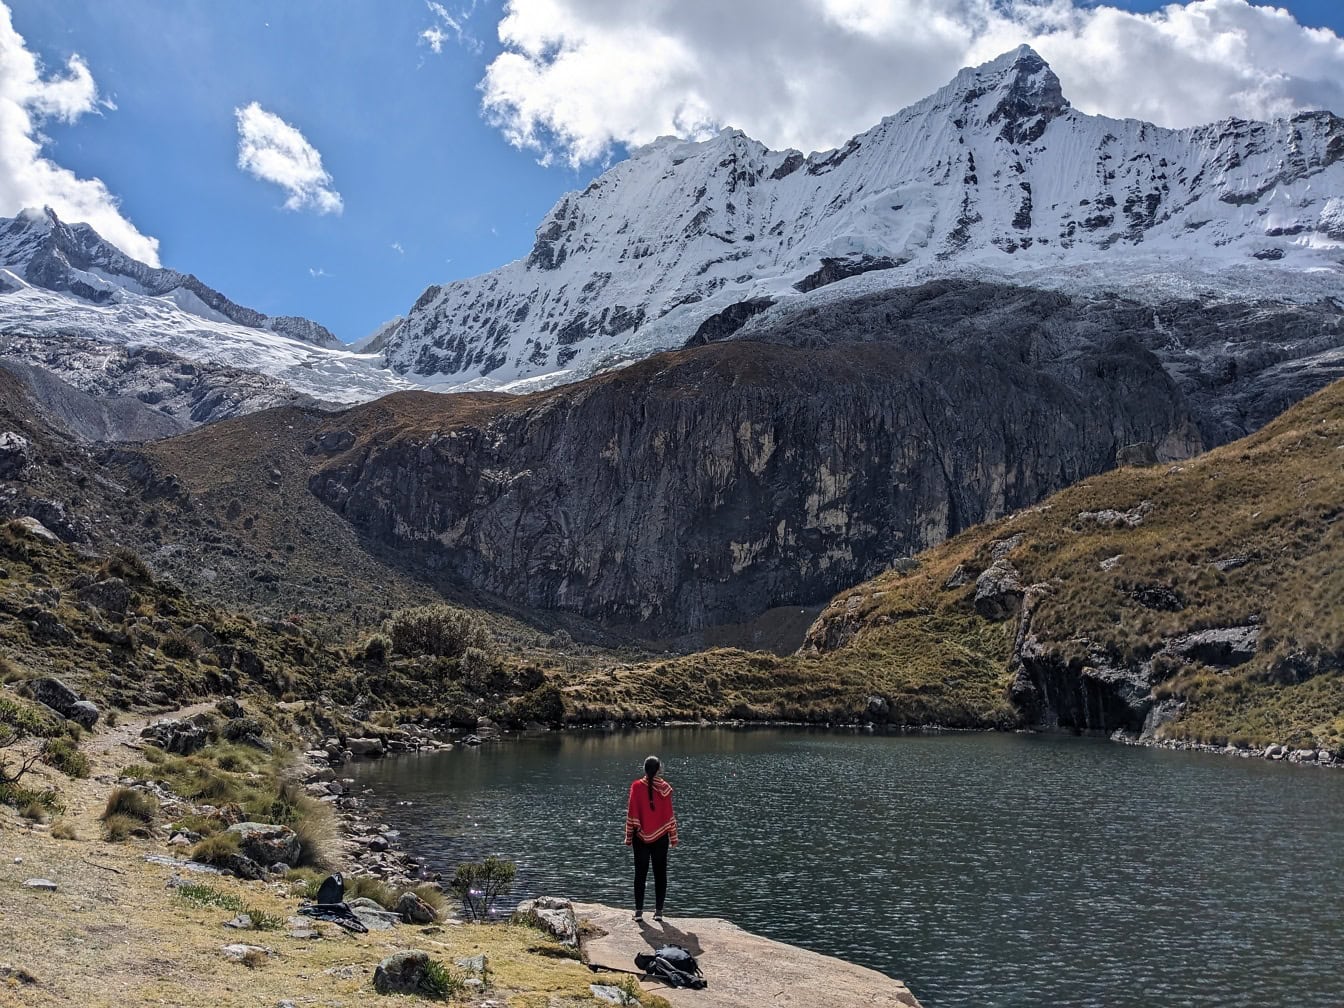 Άτομο με παραδοσιακό περουβιανό πόντσο στέκεται σε μια όχθη λίμνης στην οροσειρά Cordillera Blanca στις Άνδεις του Περού, στη Λατινική Αμερική